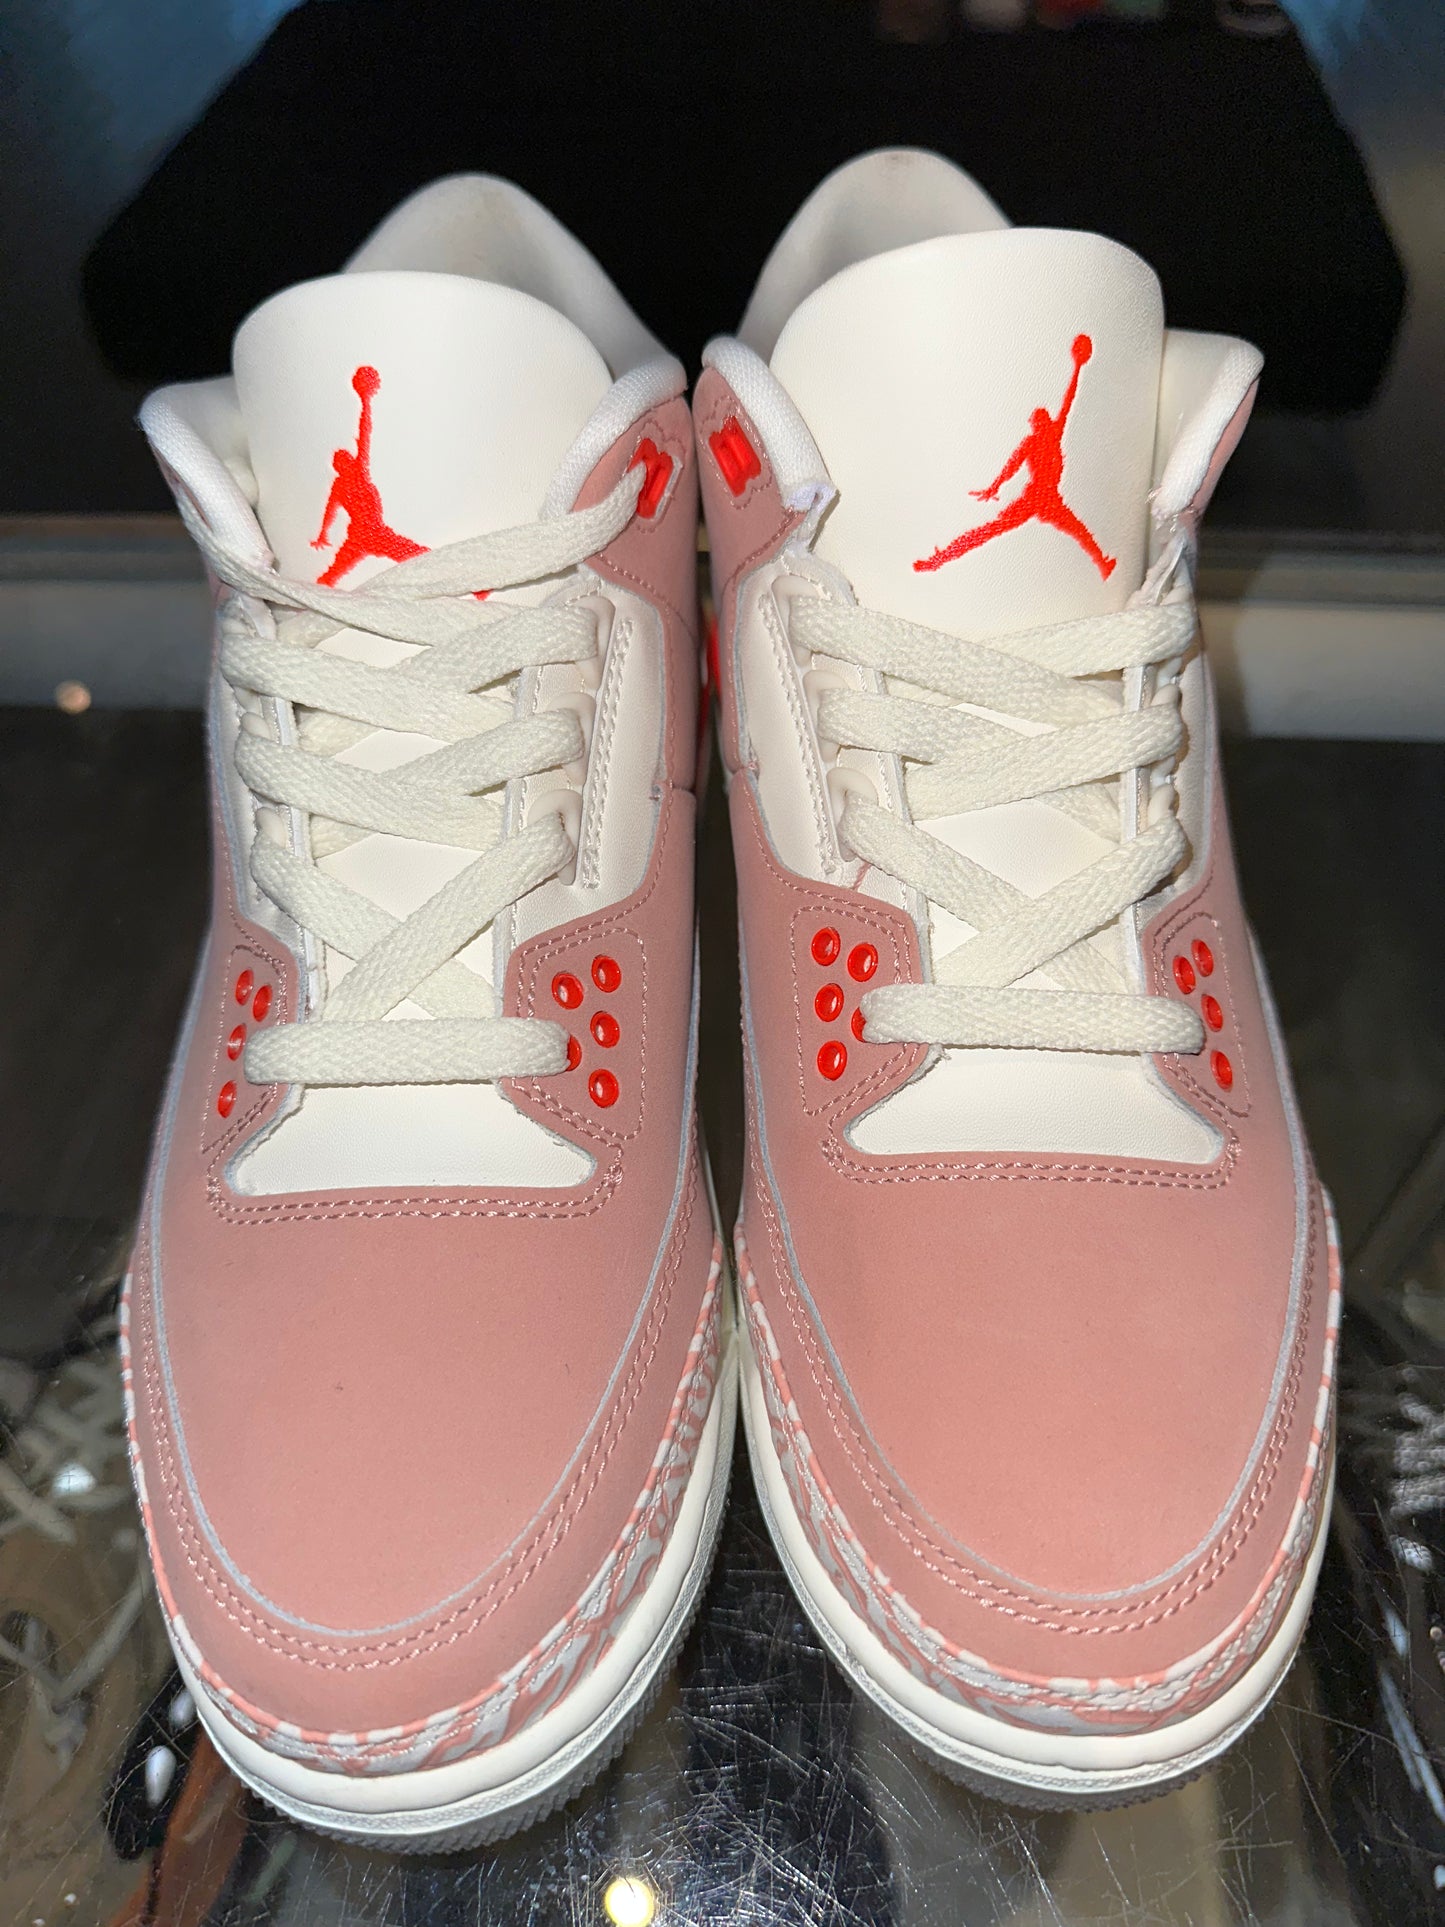 Size 6 (7.5W) Air Jordan 3 “Rust Pink” (Mall)